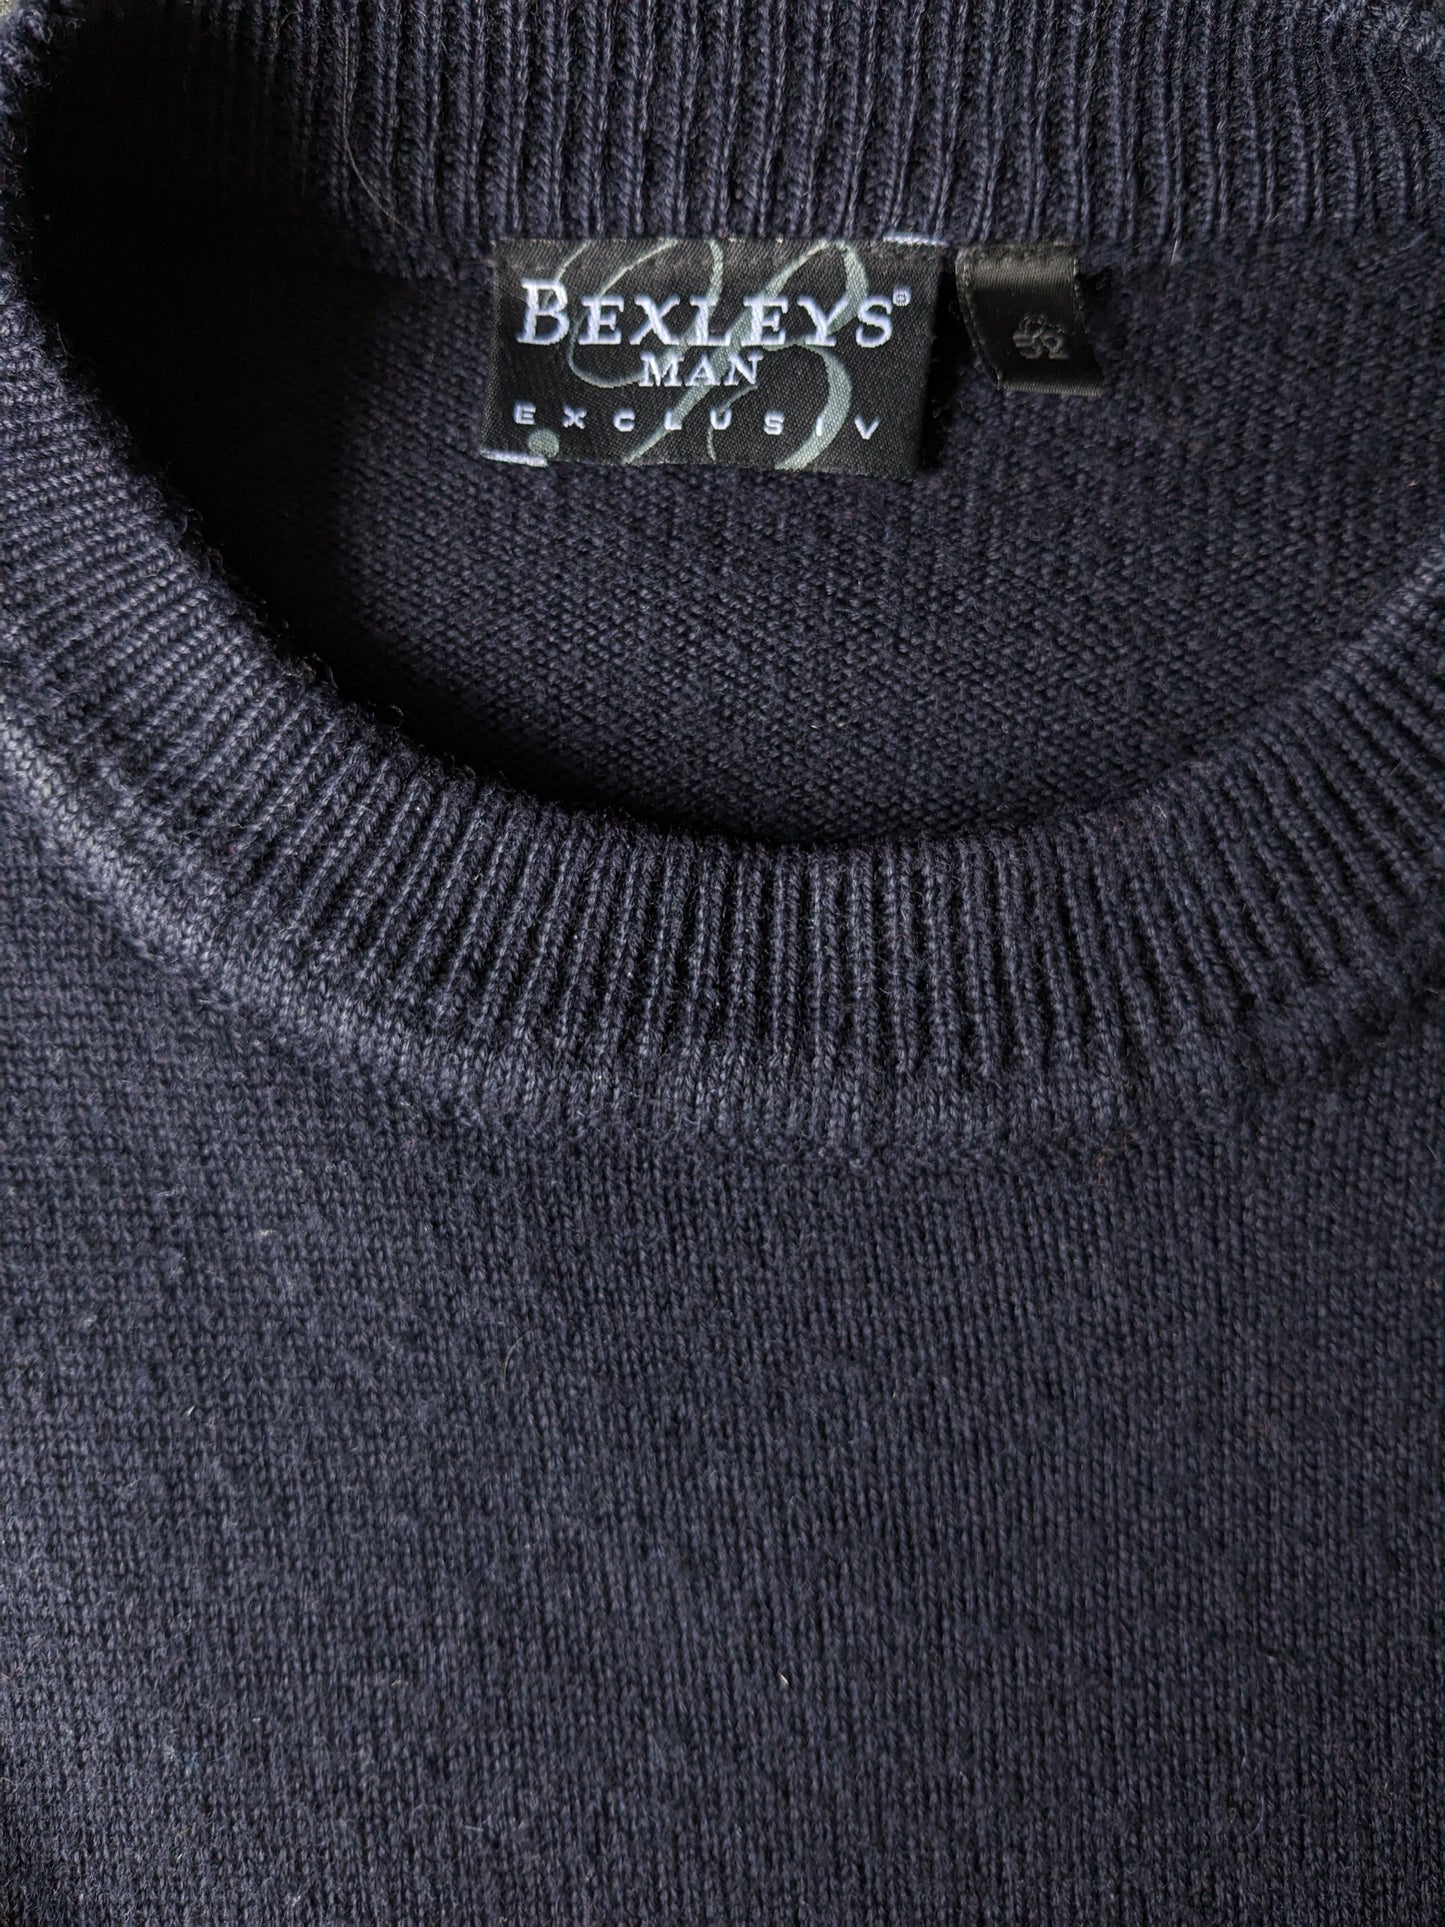 Vintage Bexleys Merino Wollpullover. Dunkelblau grau rot gefärbt. Größe L.